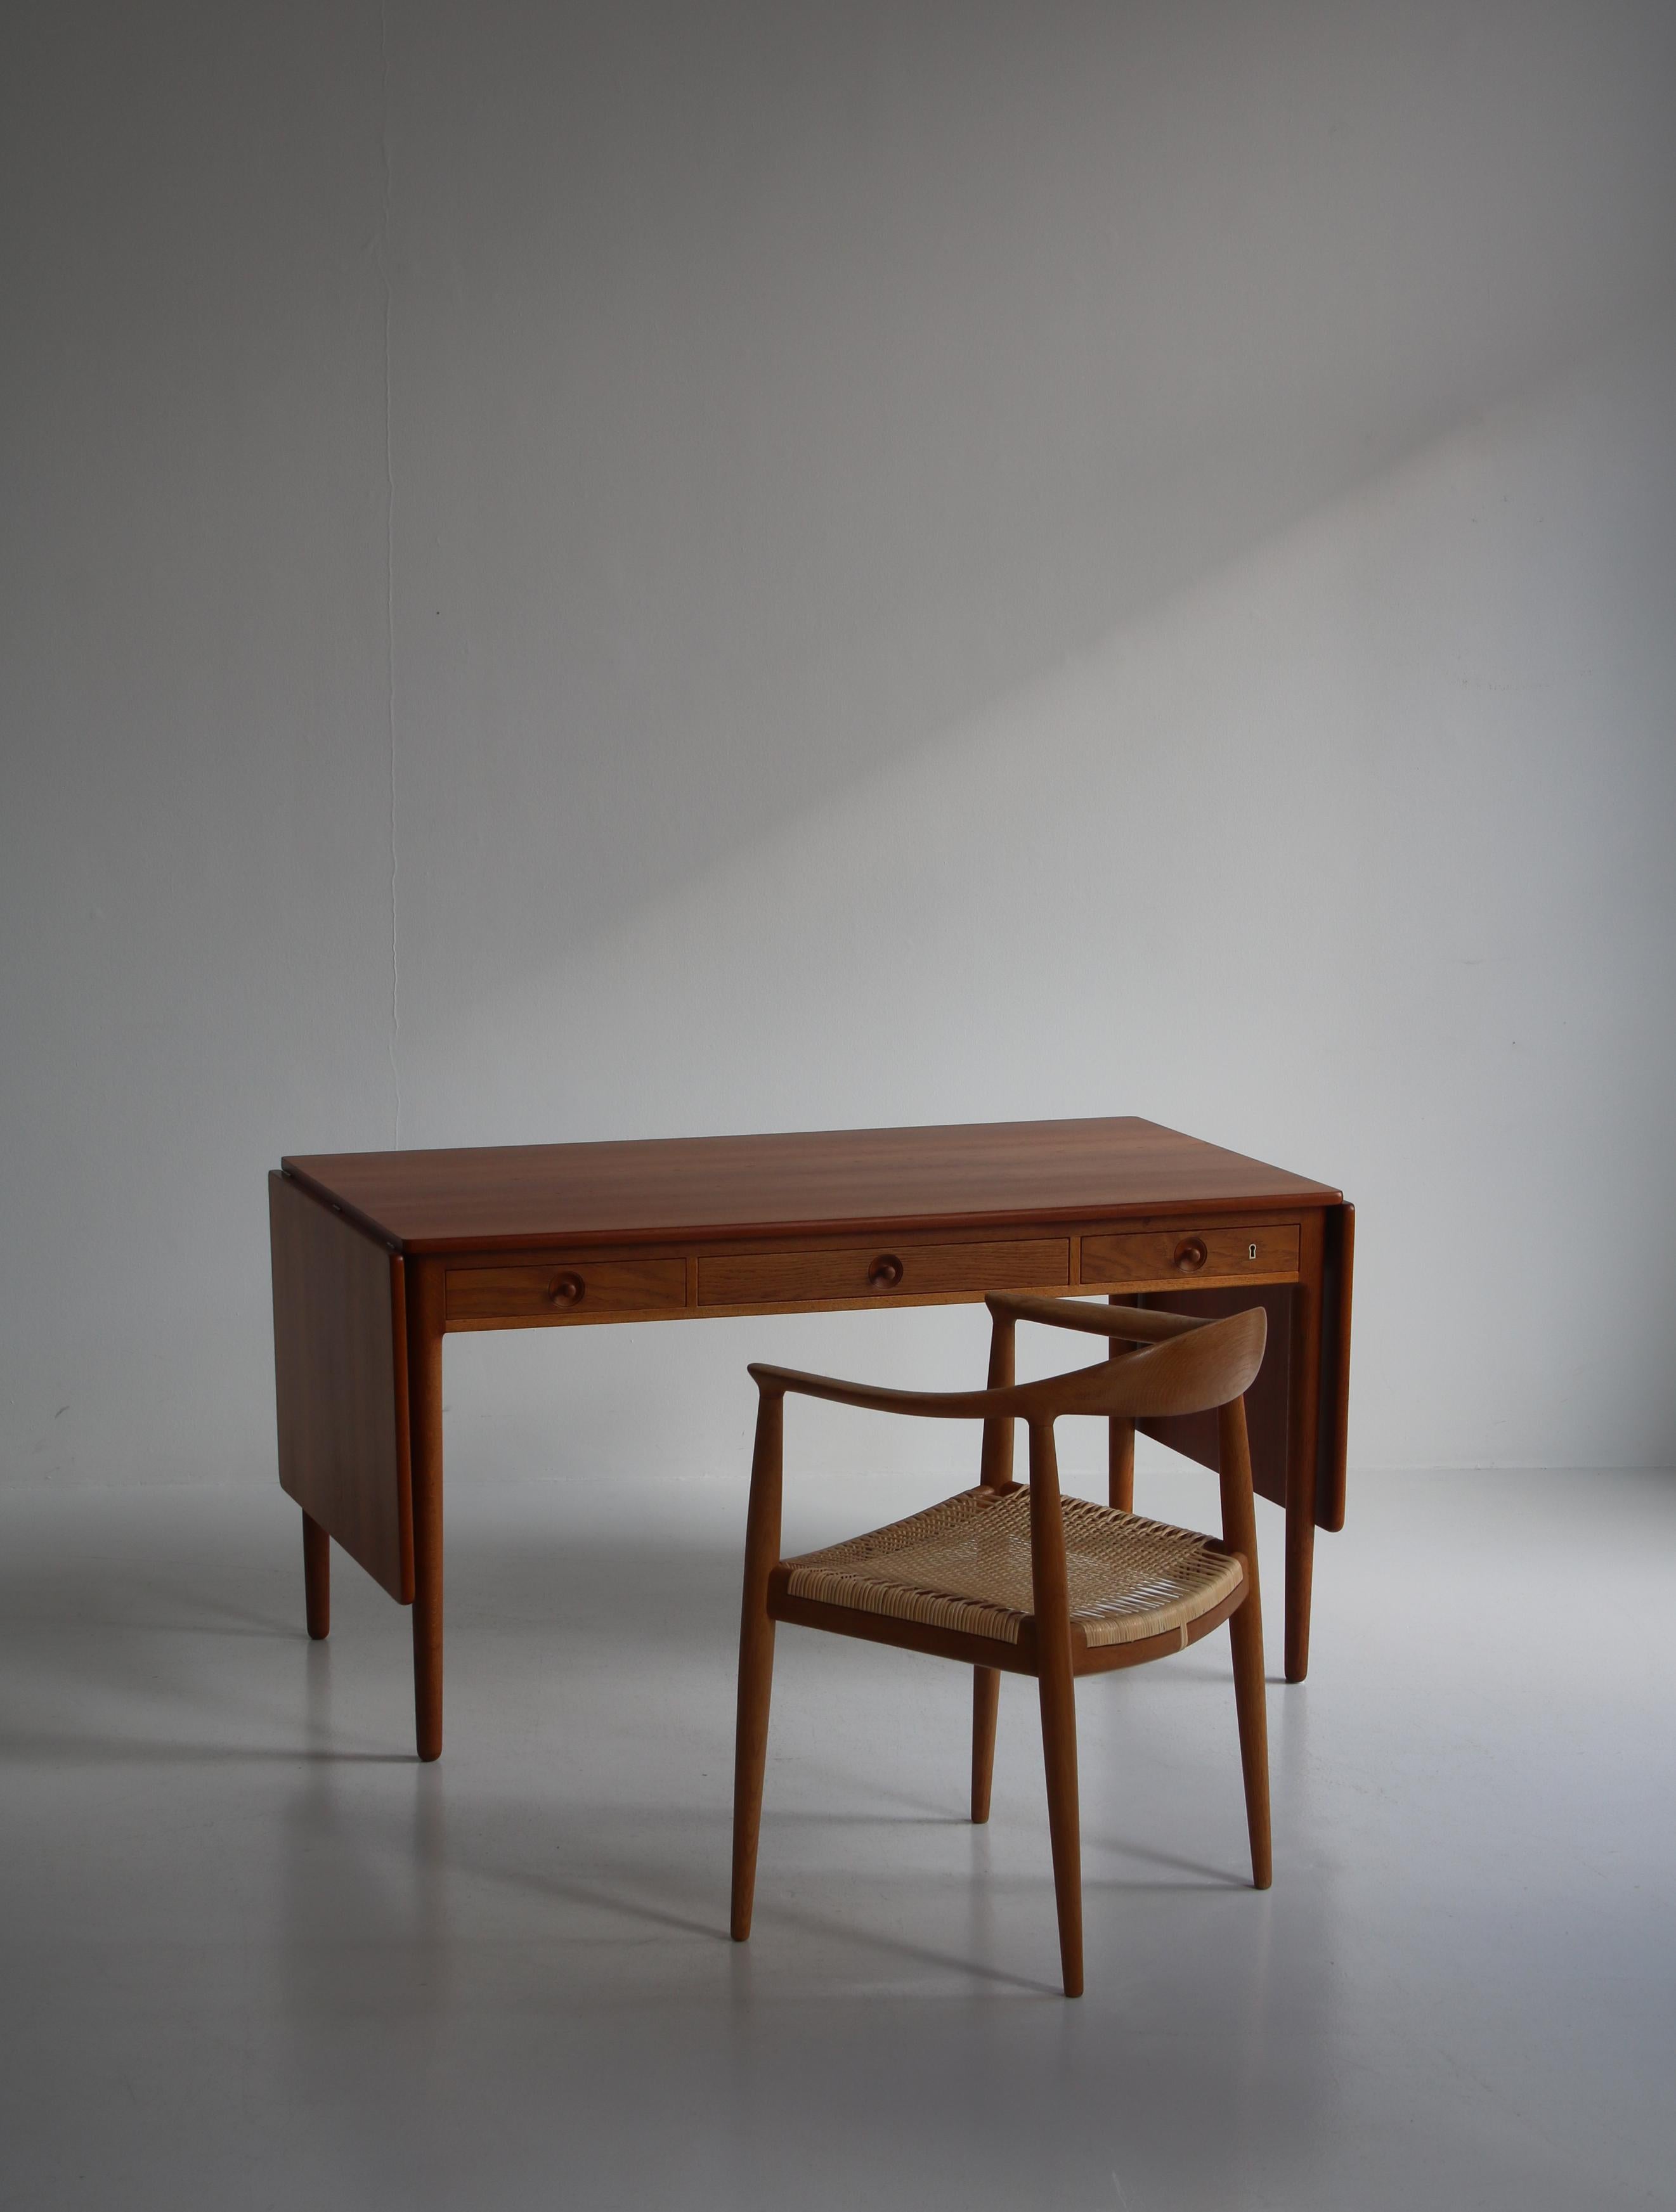 Cette magnifique table à abattant du designer danois Hans J. Wegner peut être utilisée à la fois comme bureau et comme table à manger. Le design date de 1955 et cette table particulière fait partie de la production initiale de l'ébéniste Andreas